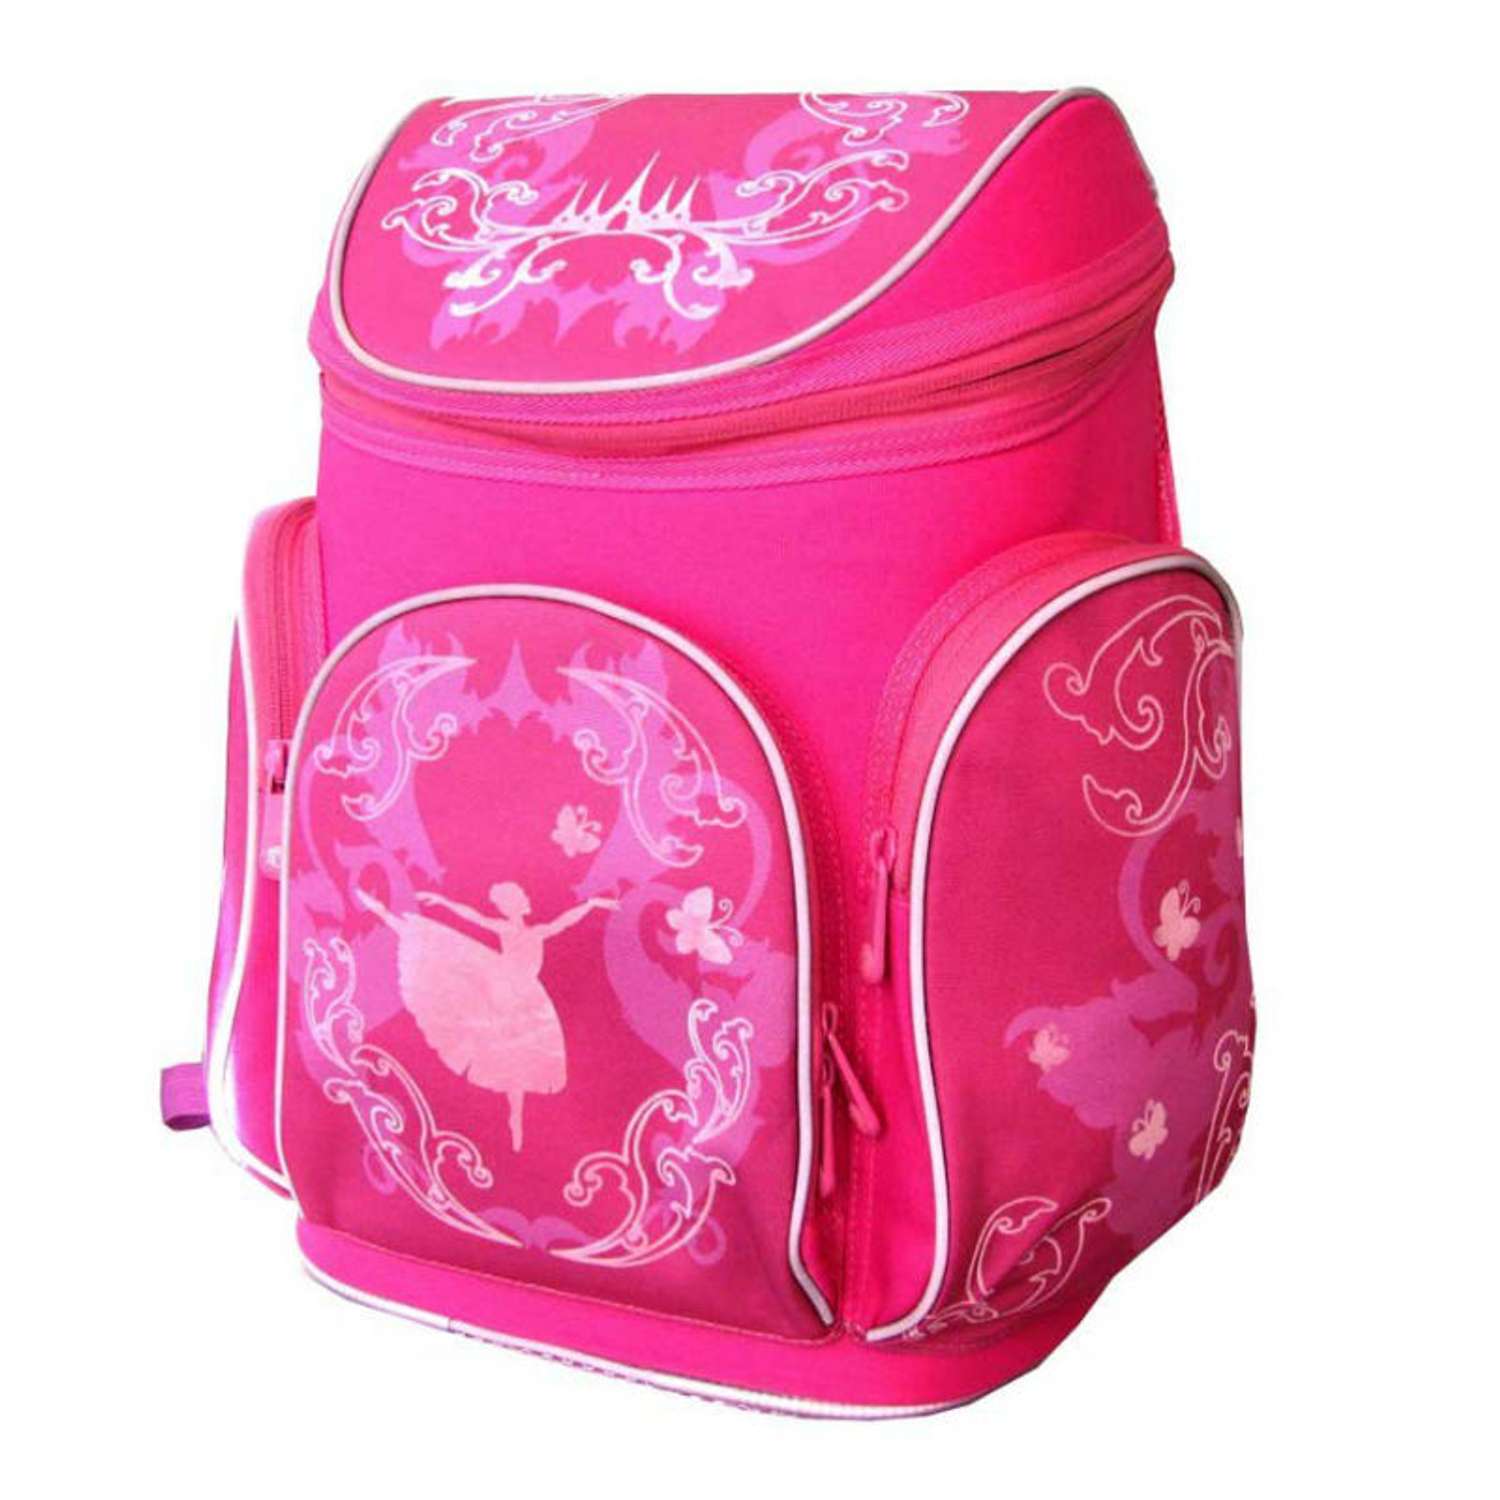 Рюкзак школьный Mag Taller Сool & fun (розовый) - фото 2